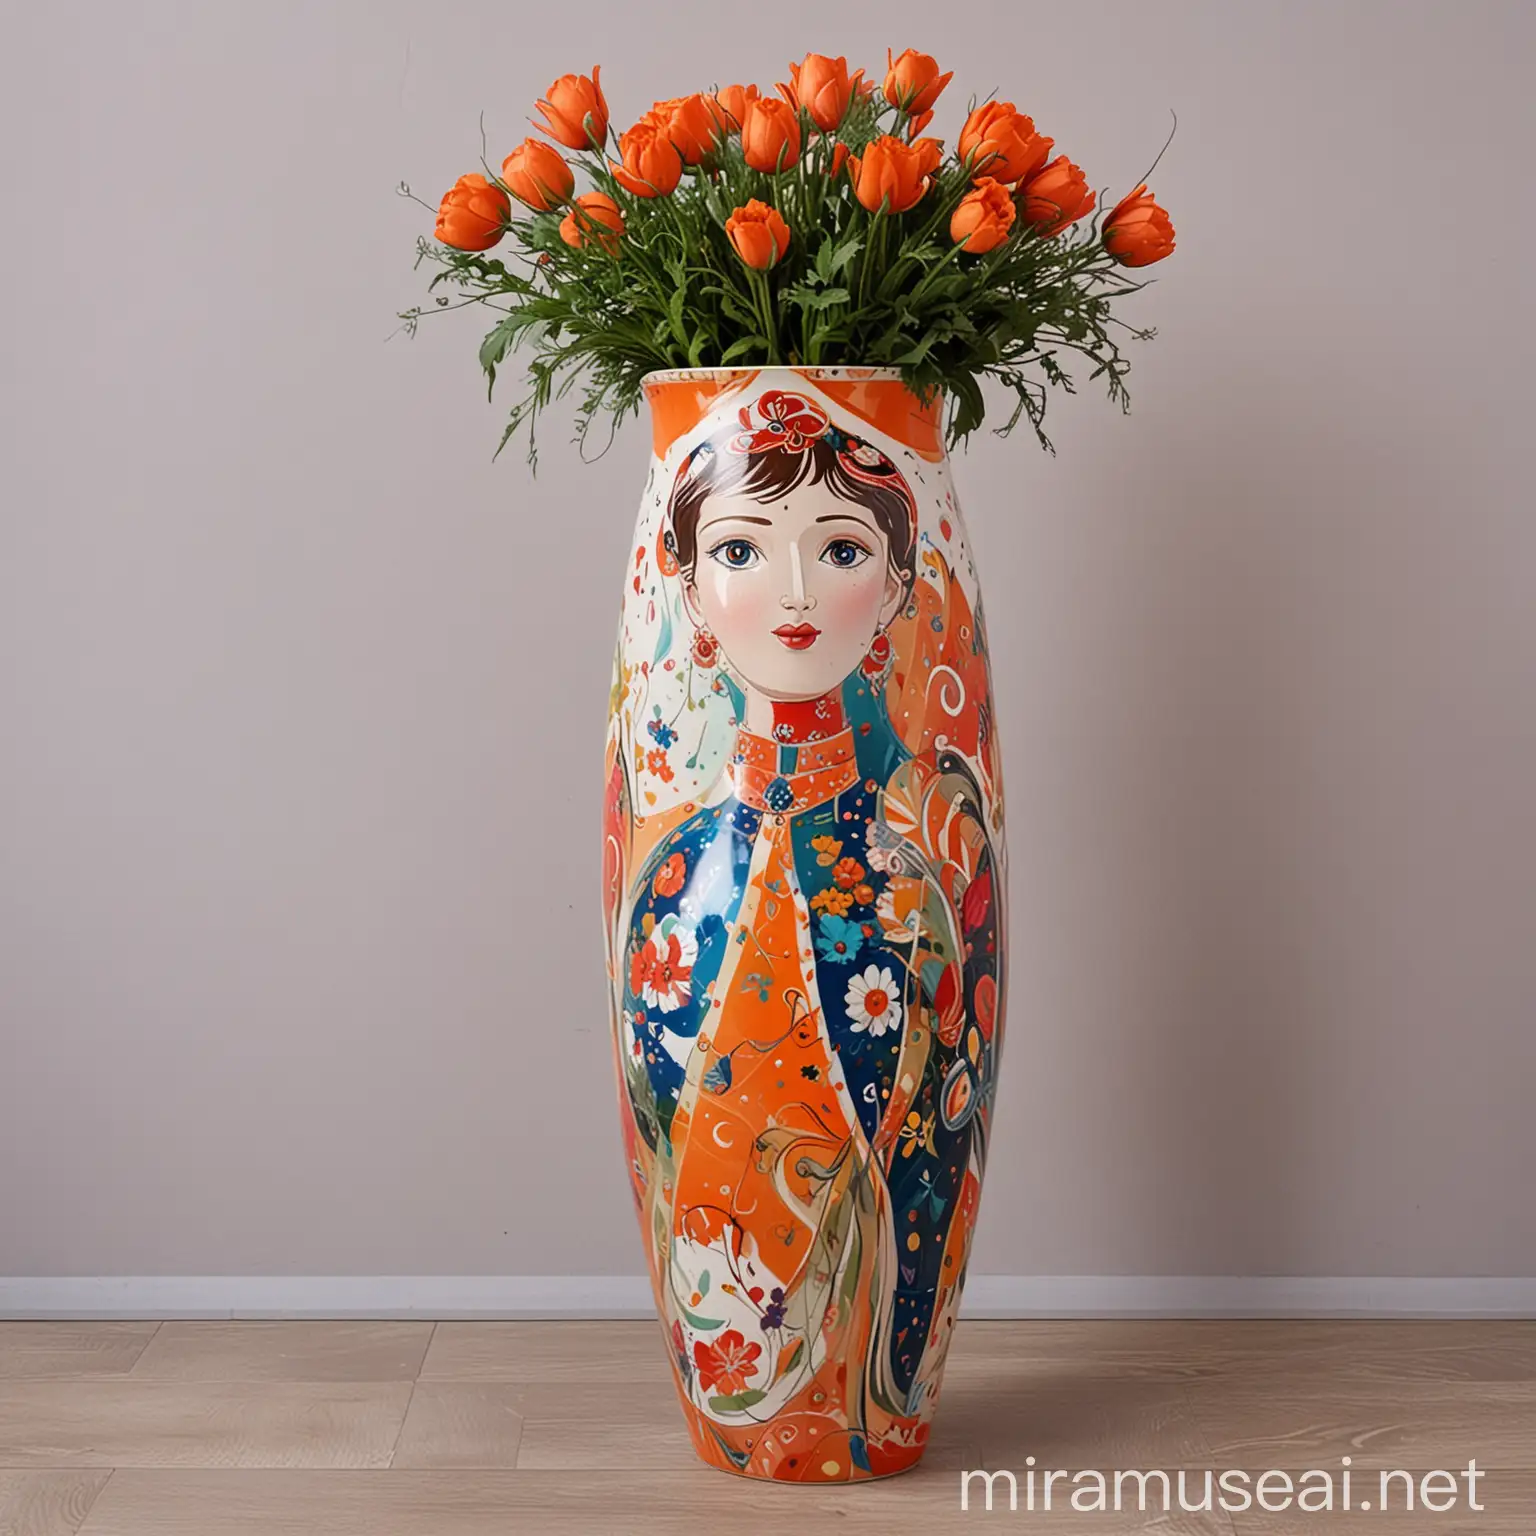 Большая напольная керамическая ваза современная яркая абстрактная в стиле персонажа Петрушка из балета Дягелева